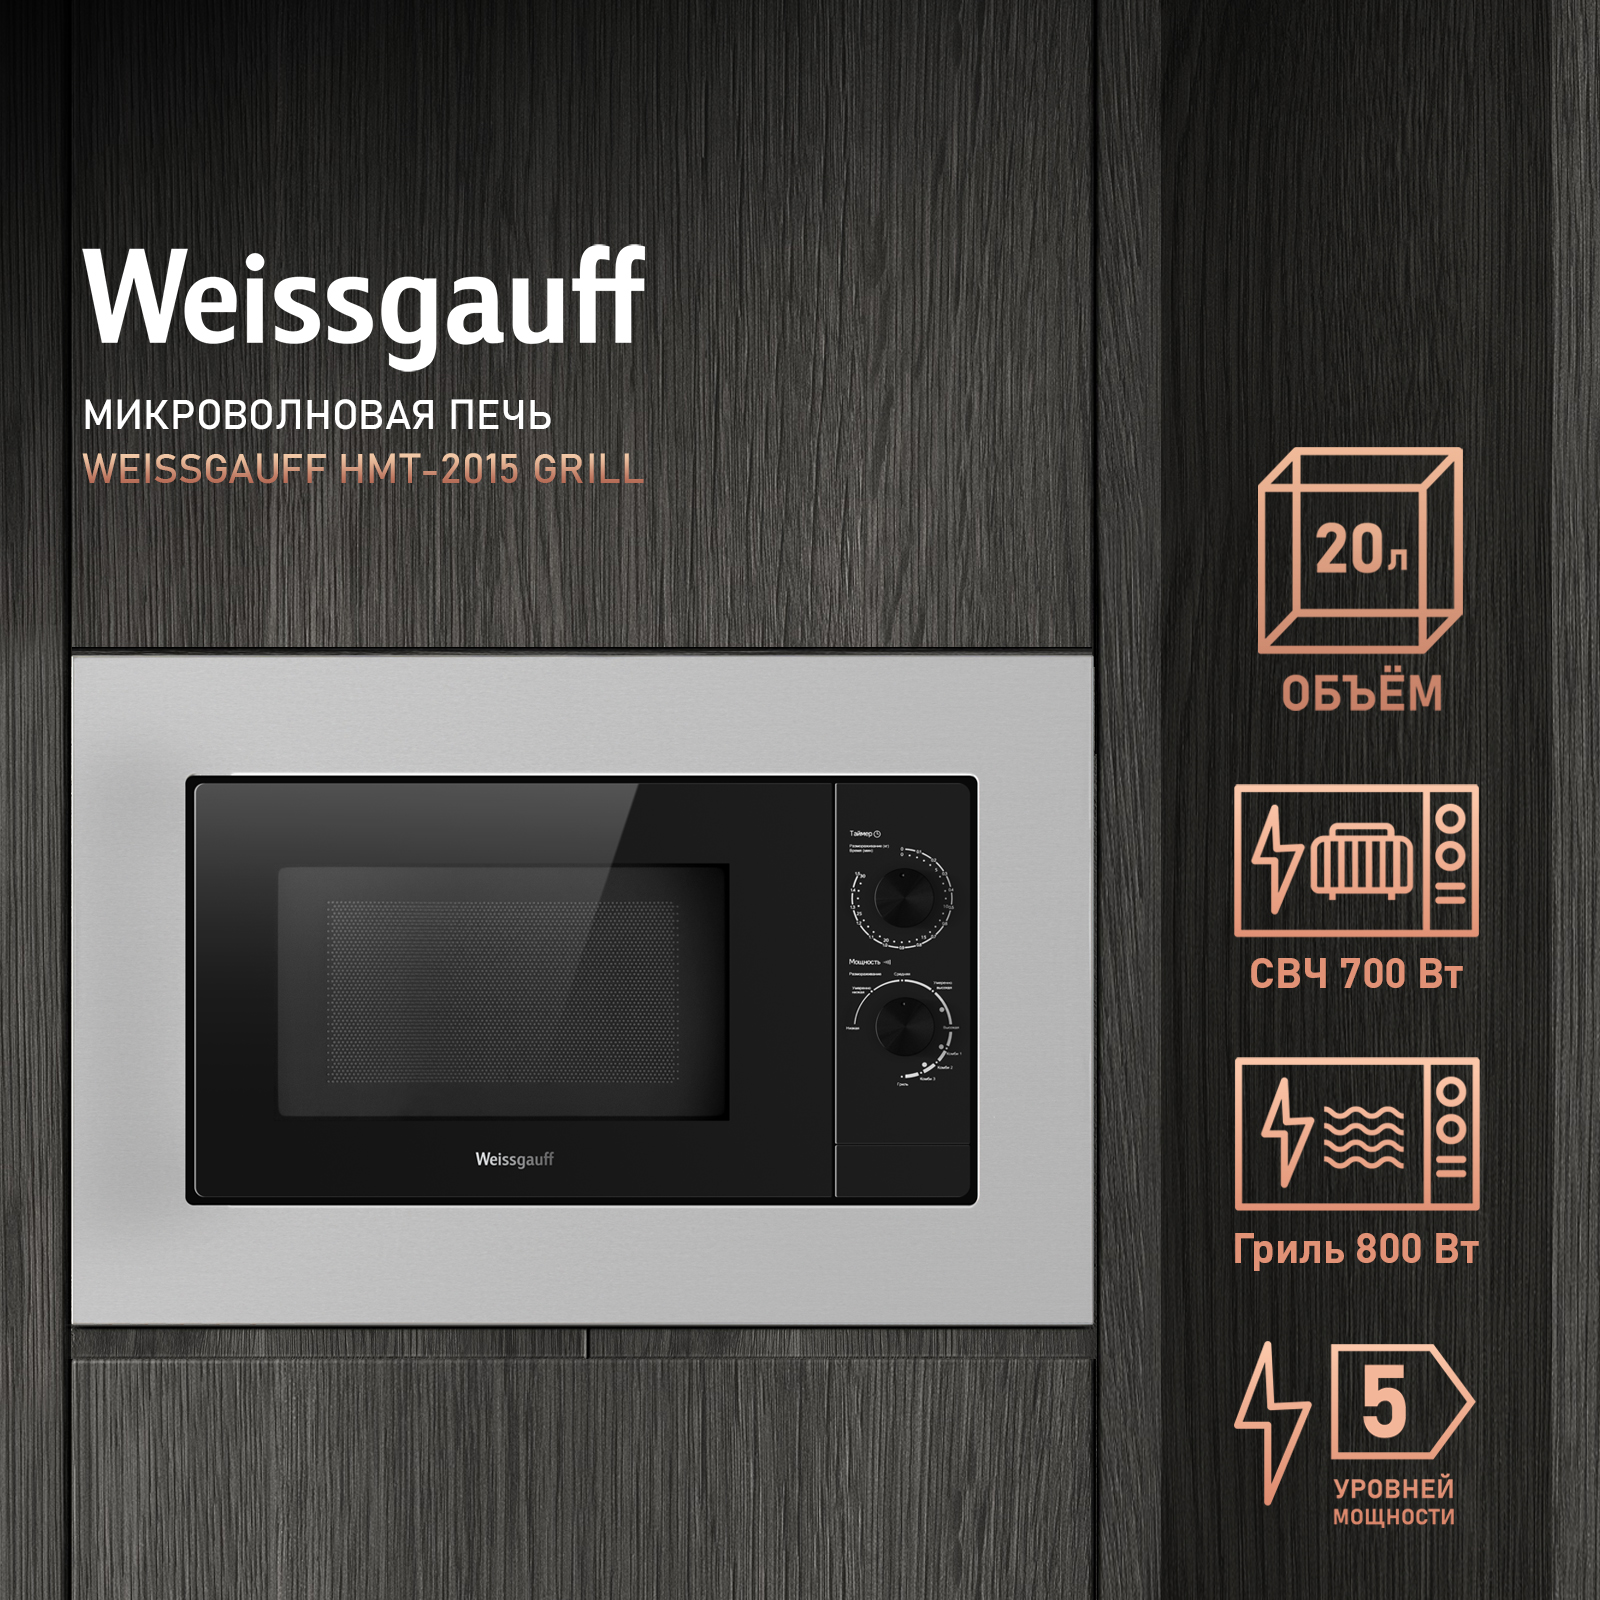 Встраиваемая микроволновая печь Weissgauff HMT-2015 Grill серебристая встраиваемая микроволновая печь weissgauff hmt 206